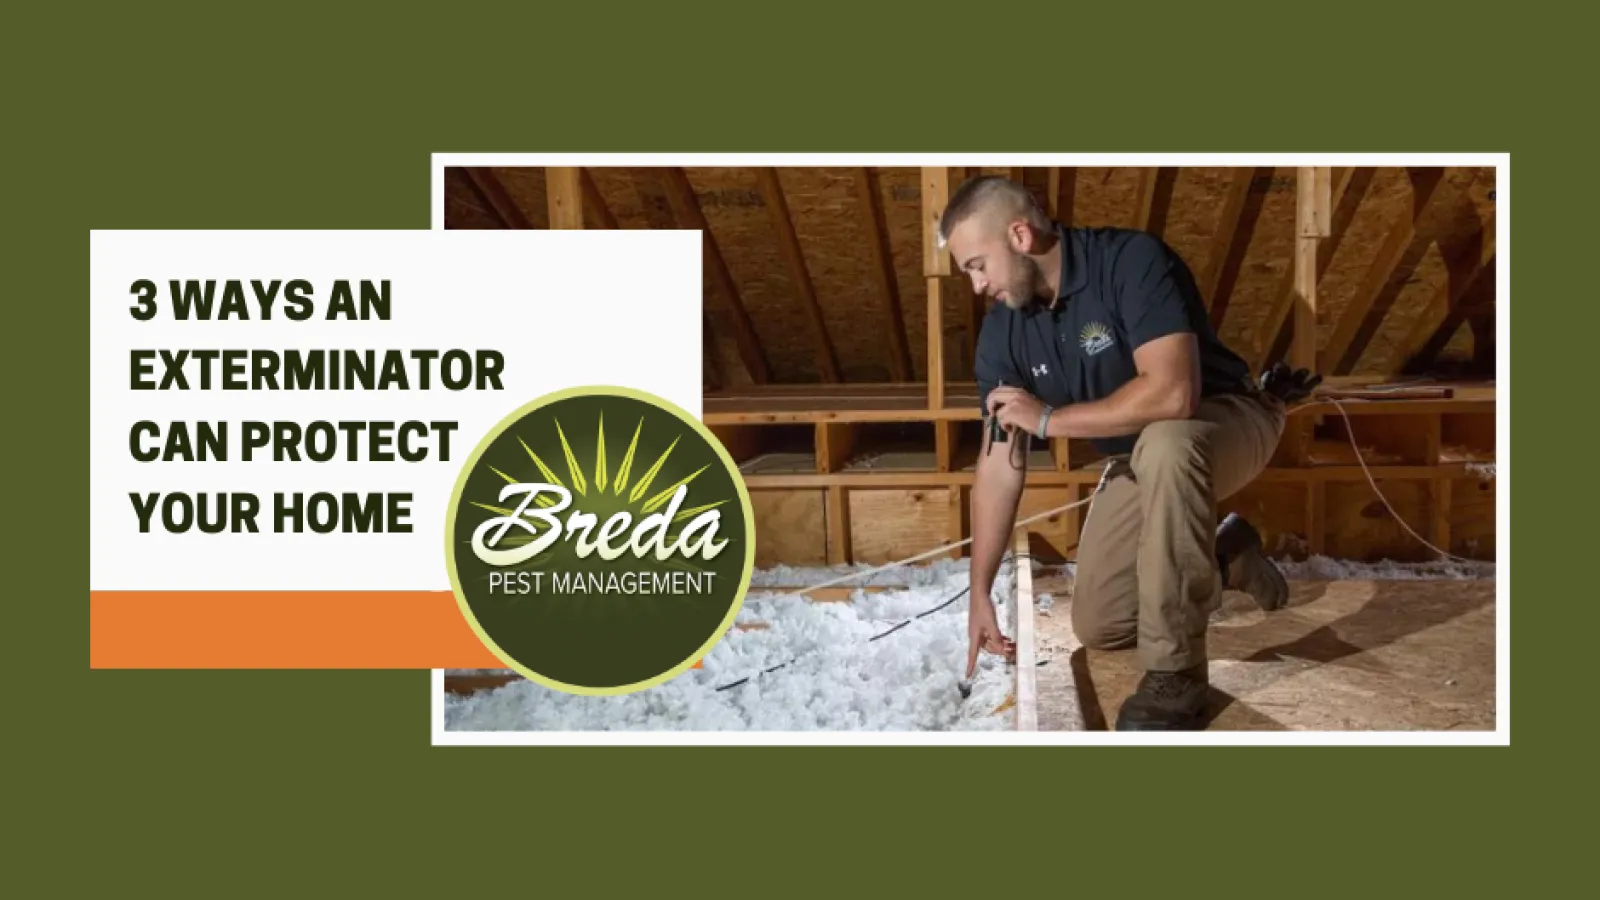 BREDA pest management technician in attic